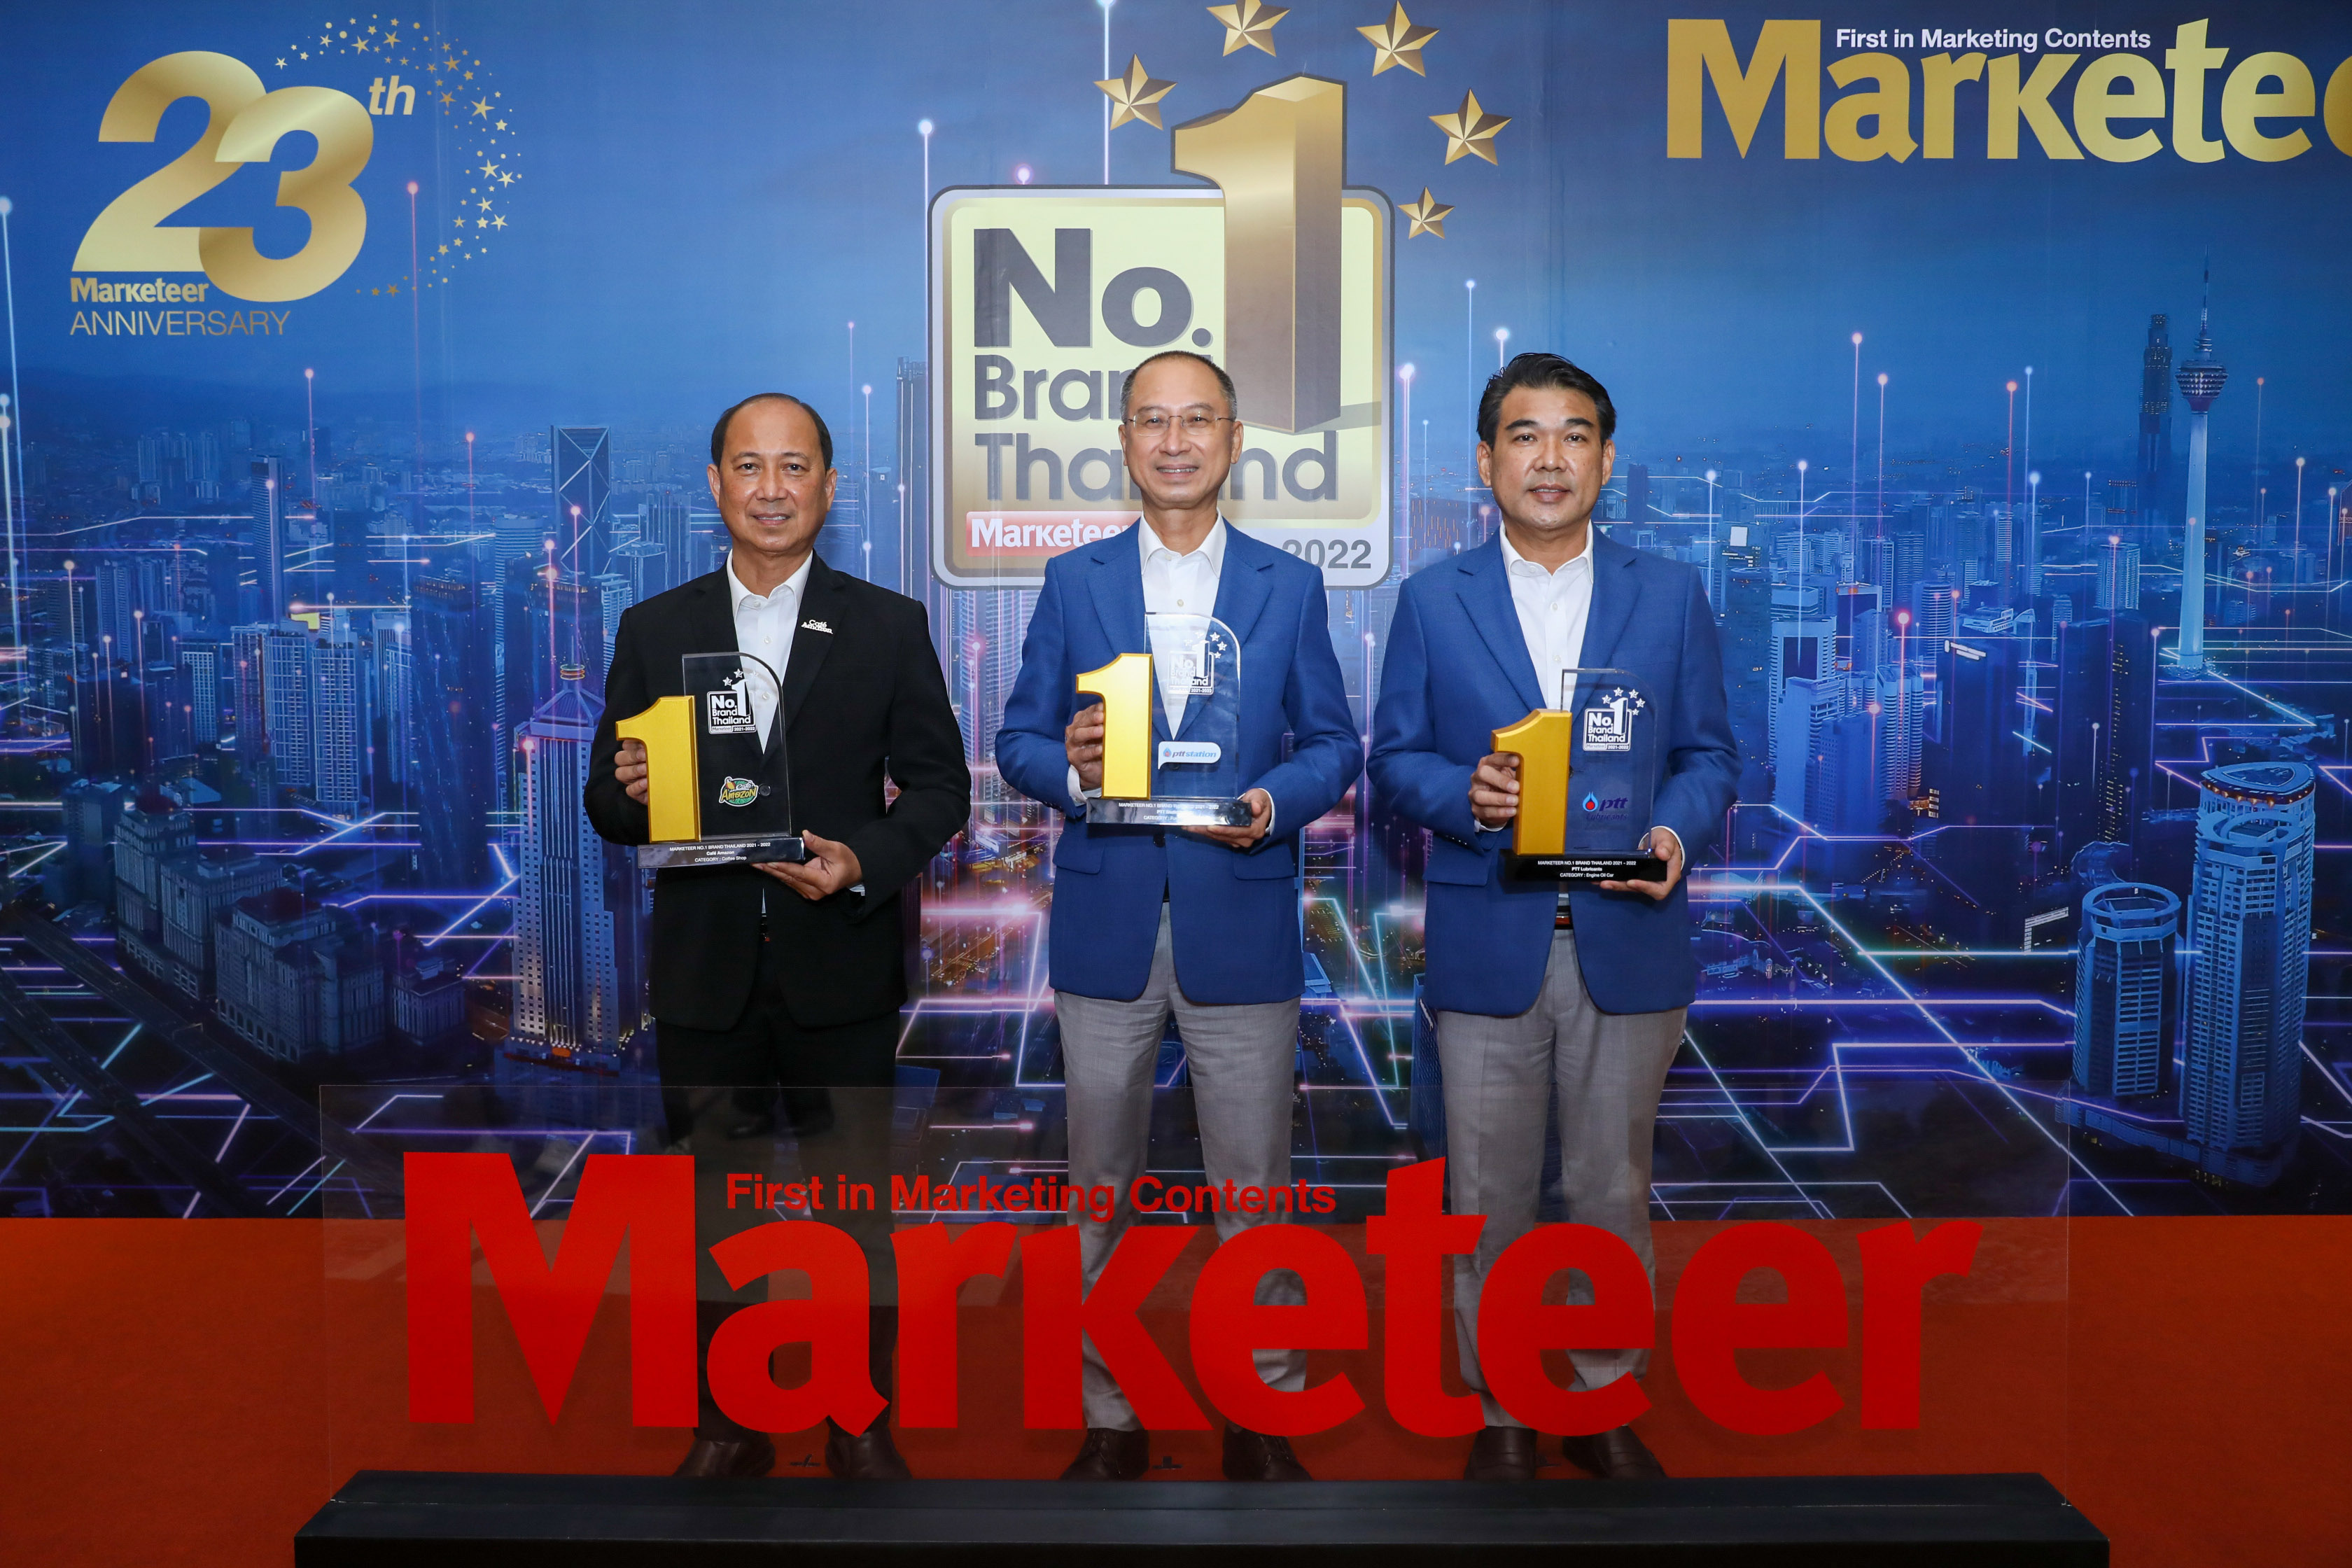 พีทีที สเตชั่น พีทีที ลูบริแคนท์ส และ คาเฟ่ อเมซอน ตอกย้ำความสำเร็จ คว้ารางวัล Marketeer No.1 Brand Thailand 2021 - 2022 แบรนด์ยอดนิยมต่อเนื่องเป็นปีที่ 11 สำนักพิมพ์แม่บ้าน